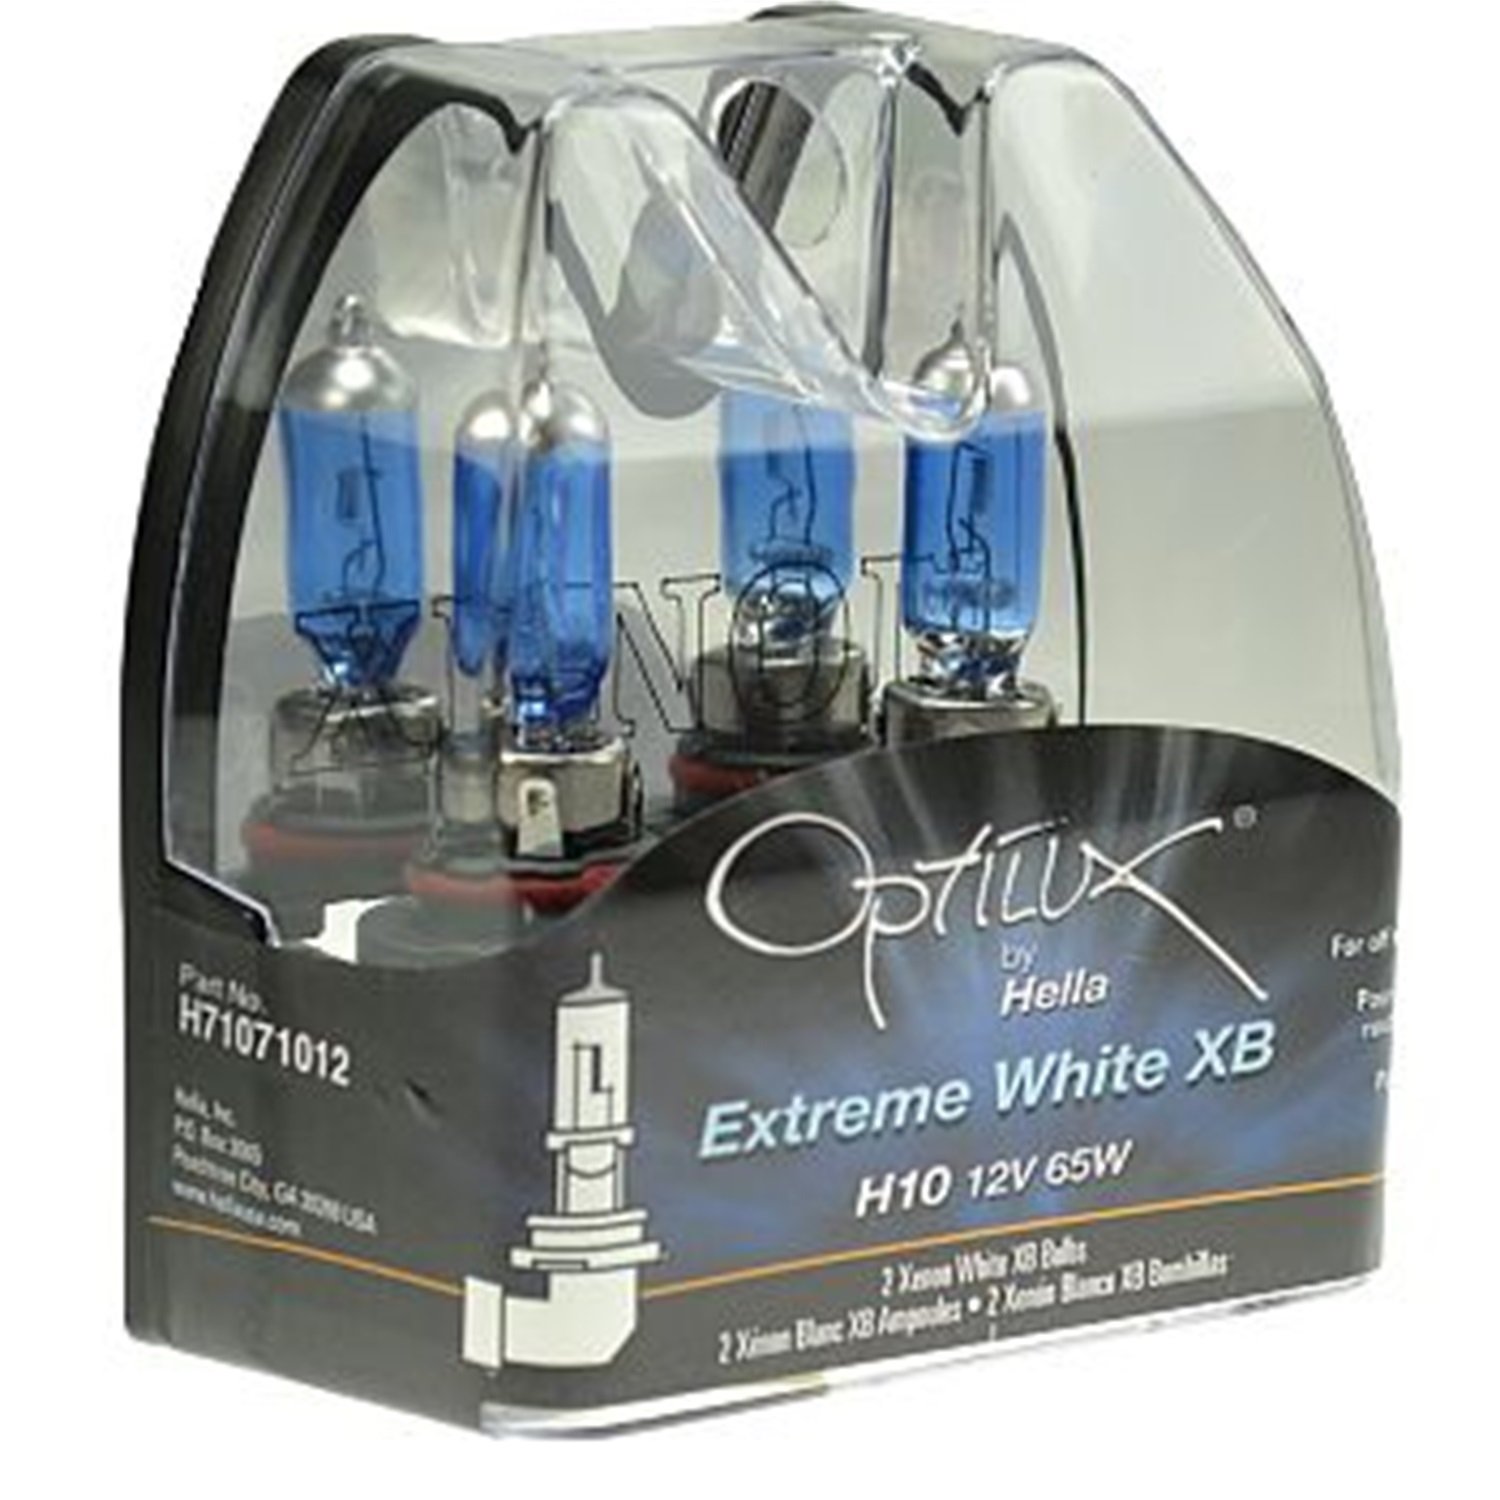 Optilux Extreme White XB Bulbs Bulb Type: H3